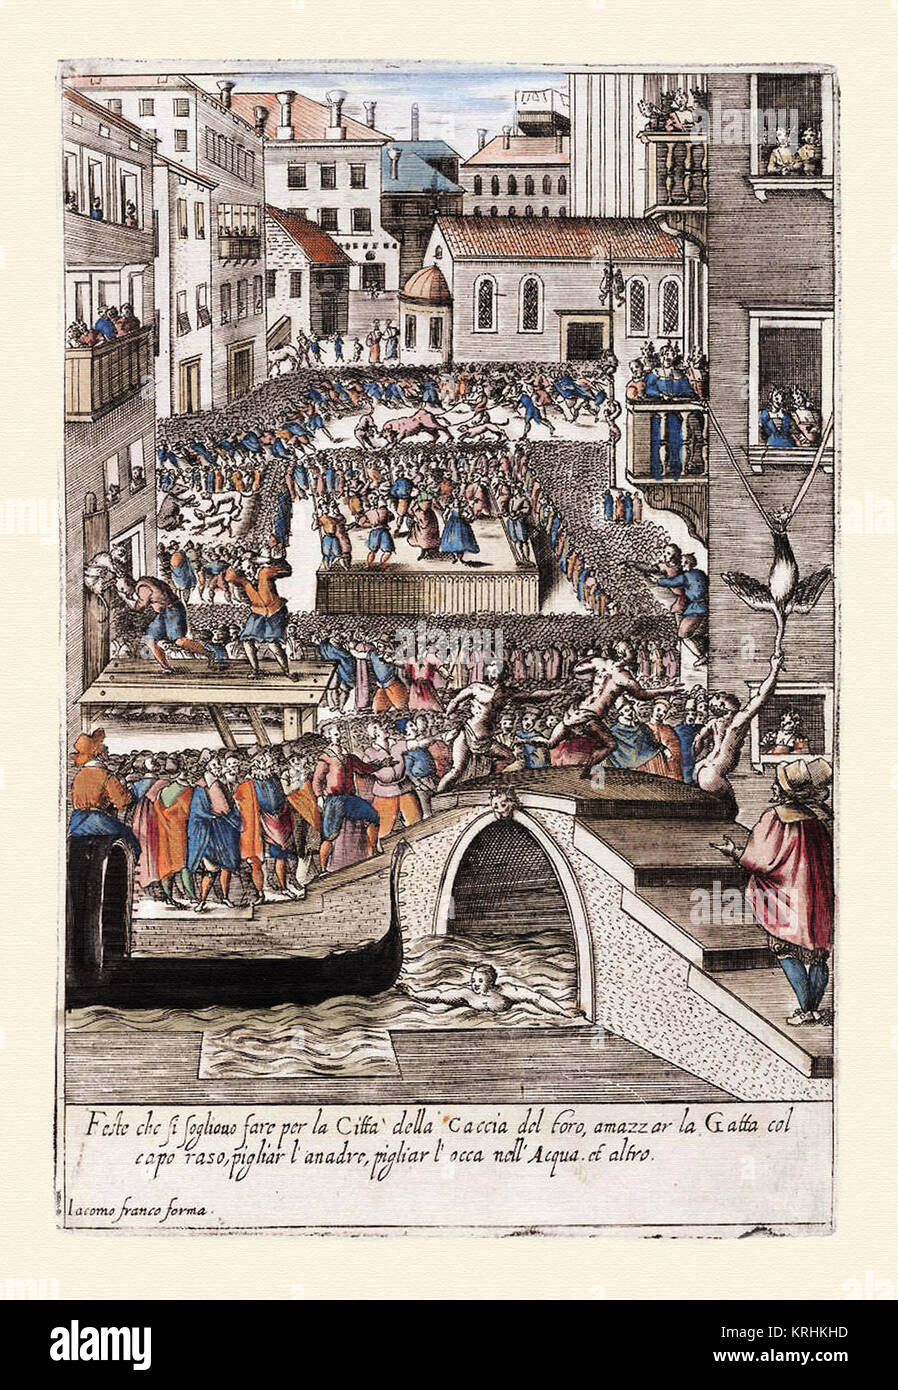 Fiesta populaires en Venecia-Habiti hvomeni d'et donne venetiane 1609 Banque D'Images